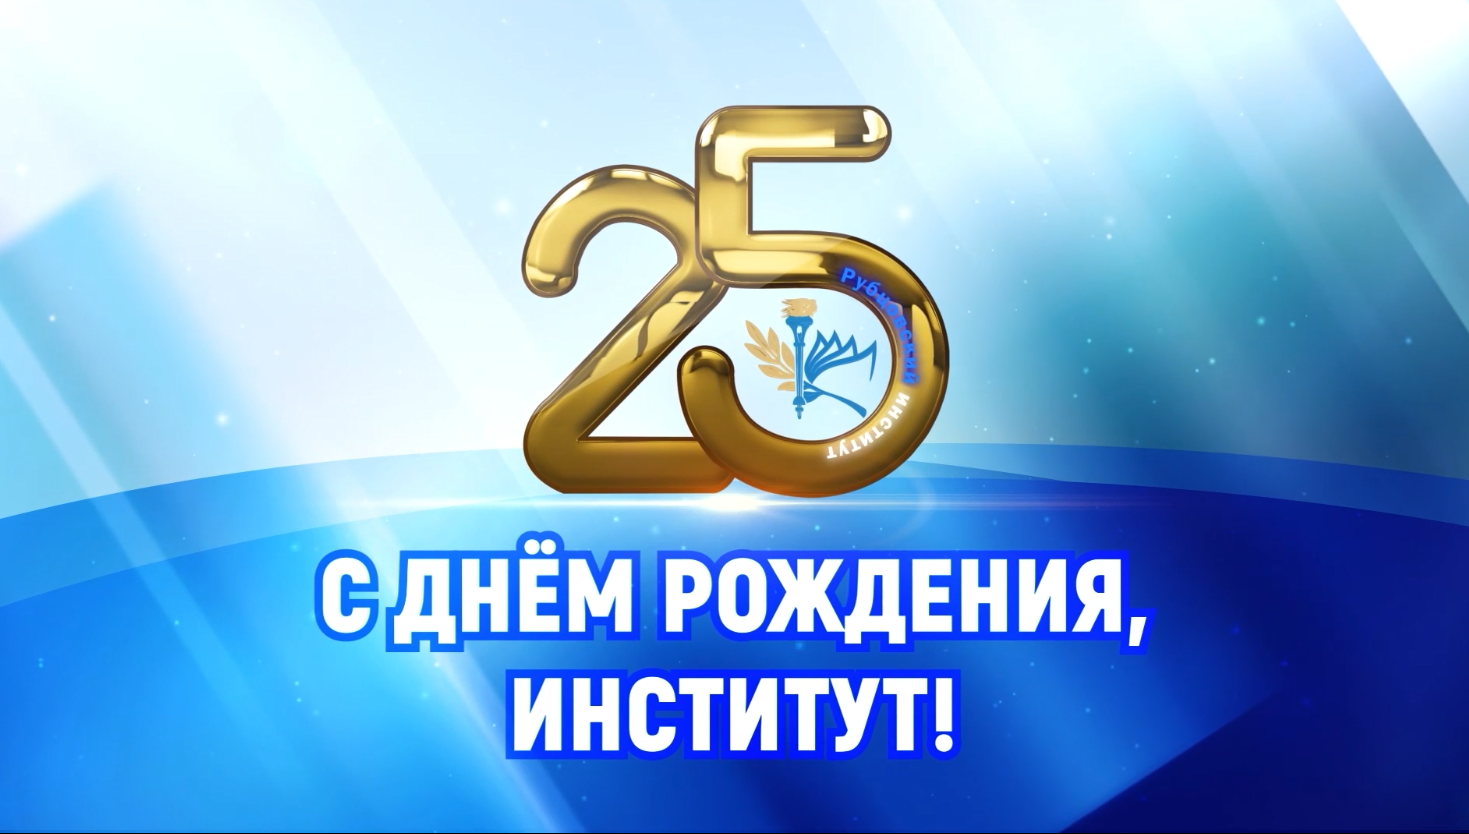 Тизер празднования 25-летие Рубцовского института (филиала) АлтГУ